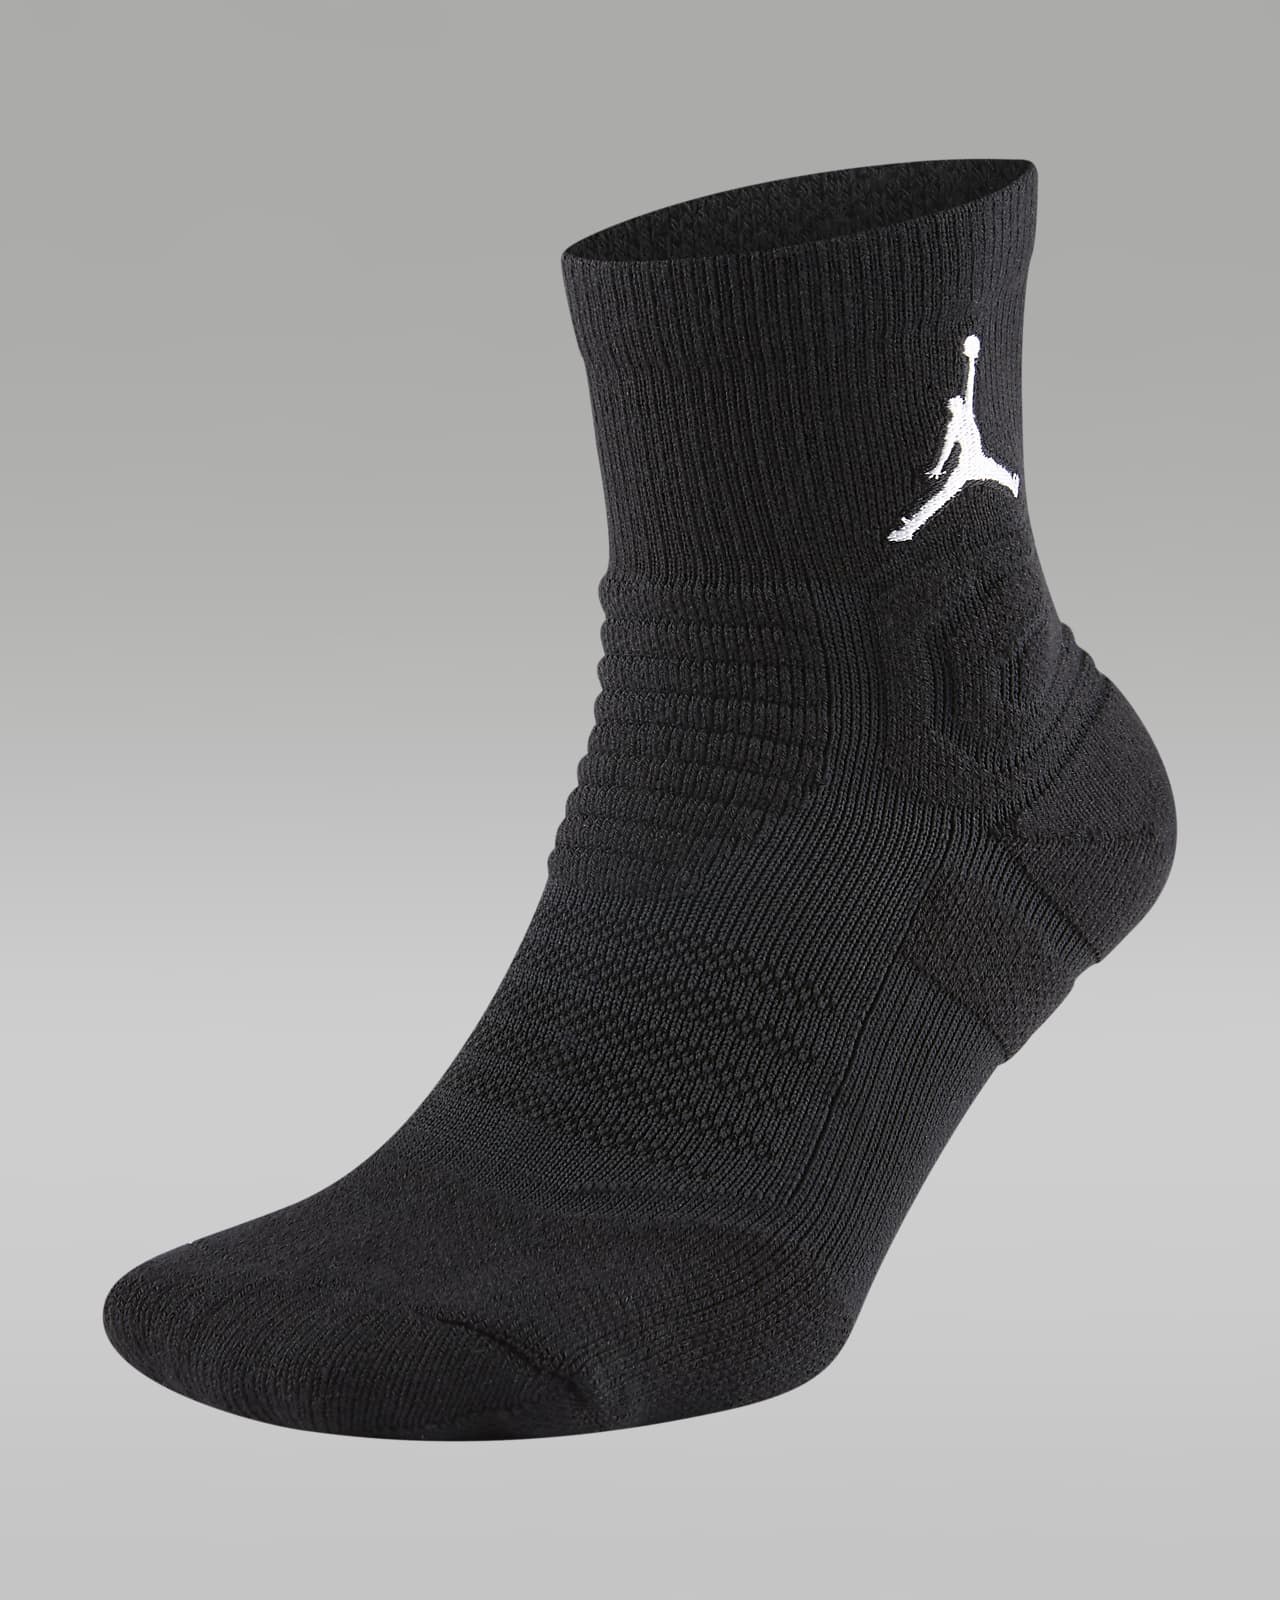 Chausette de basket, chaussette Jordan, NBA, nike